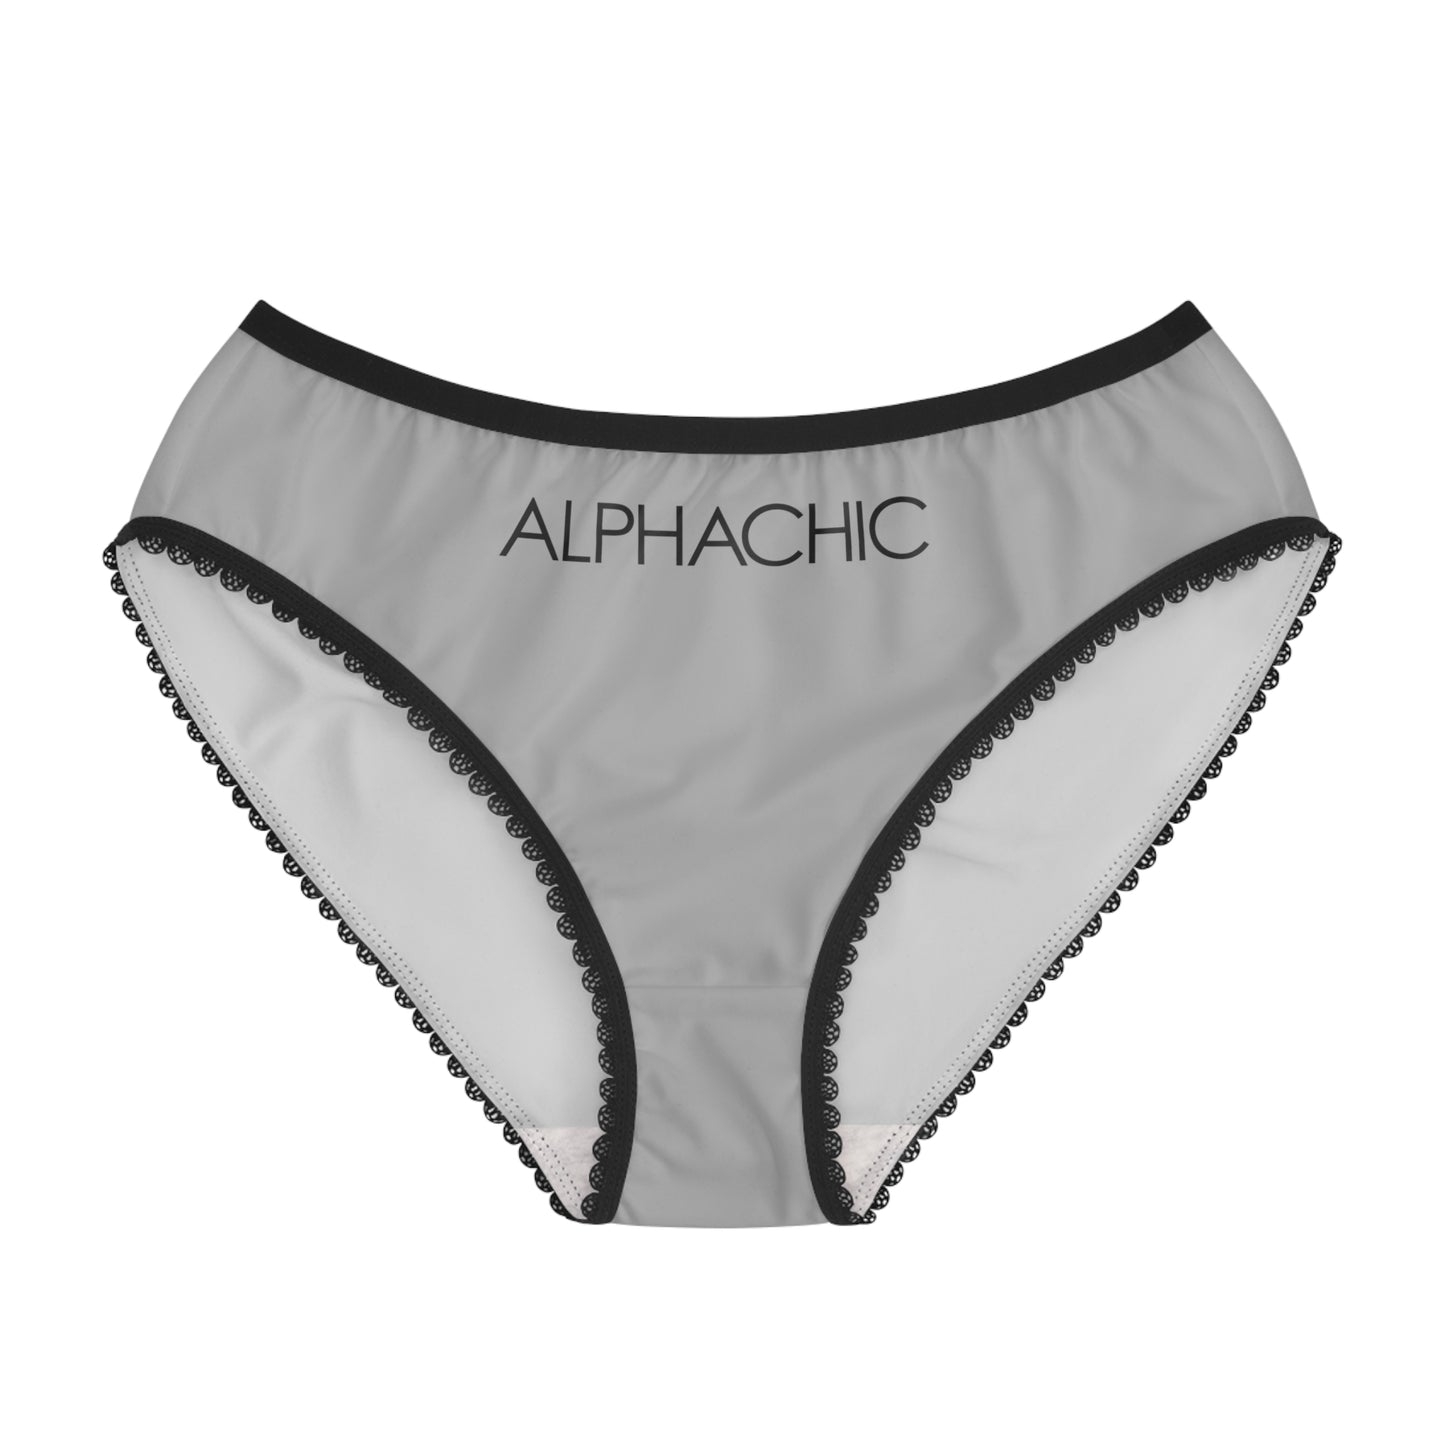 AlphaChic Briefs - Light Gray